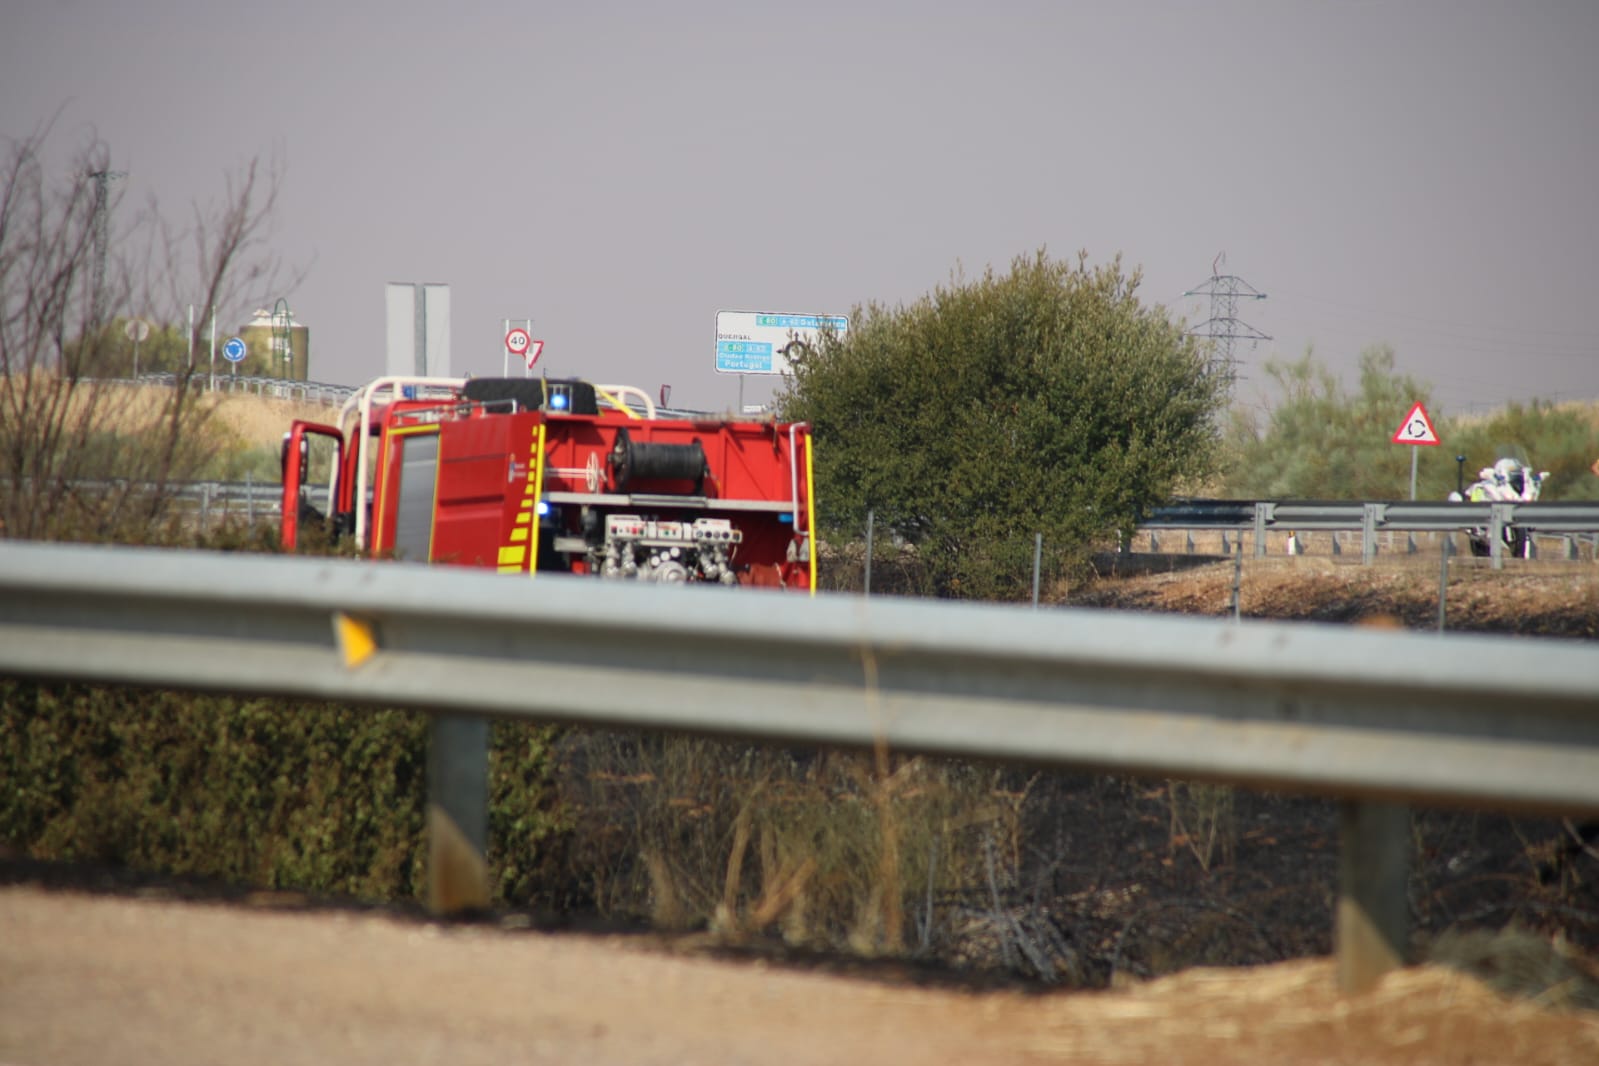  El estallido de una rueda de un camión provoca un incendio en la A-62 a la altura de Robliza de Cojos